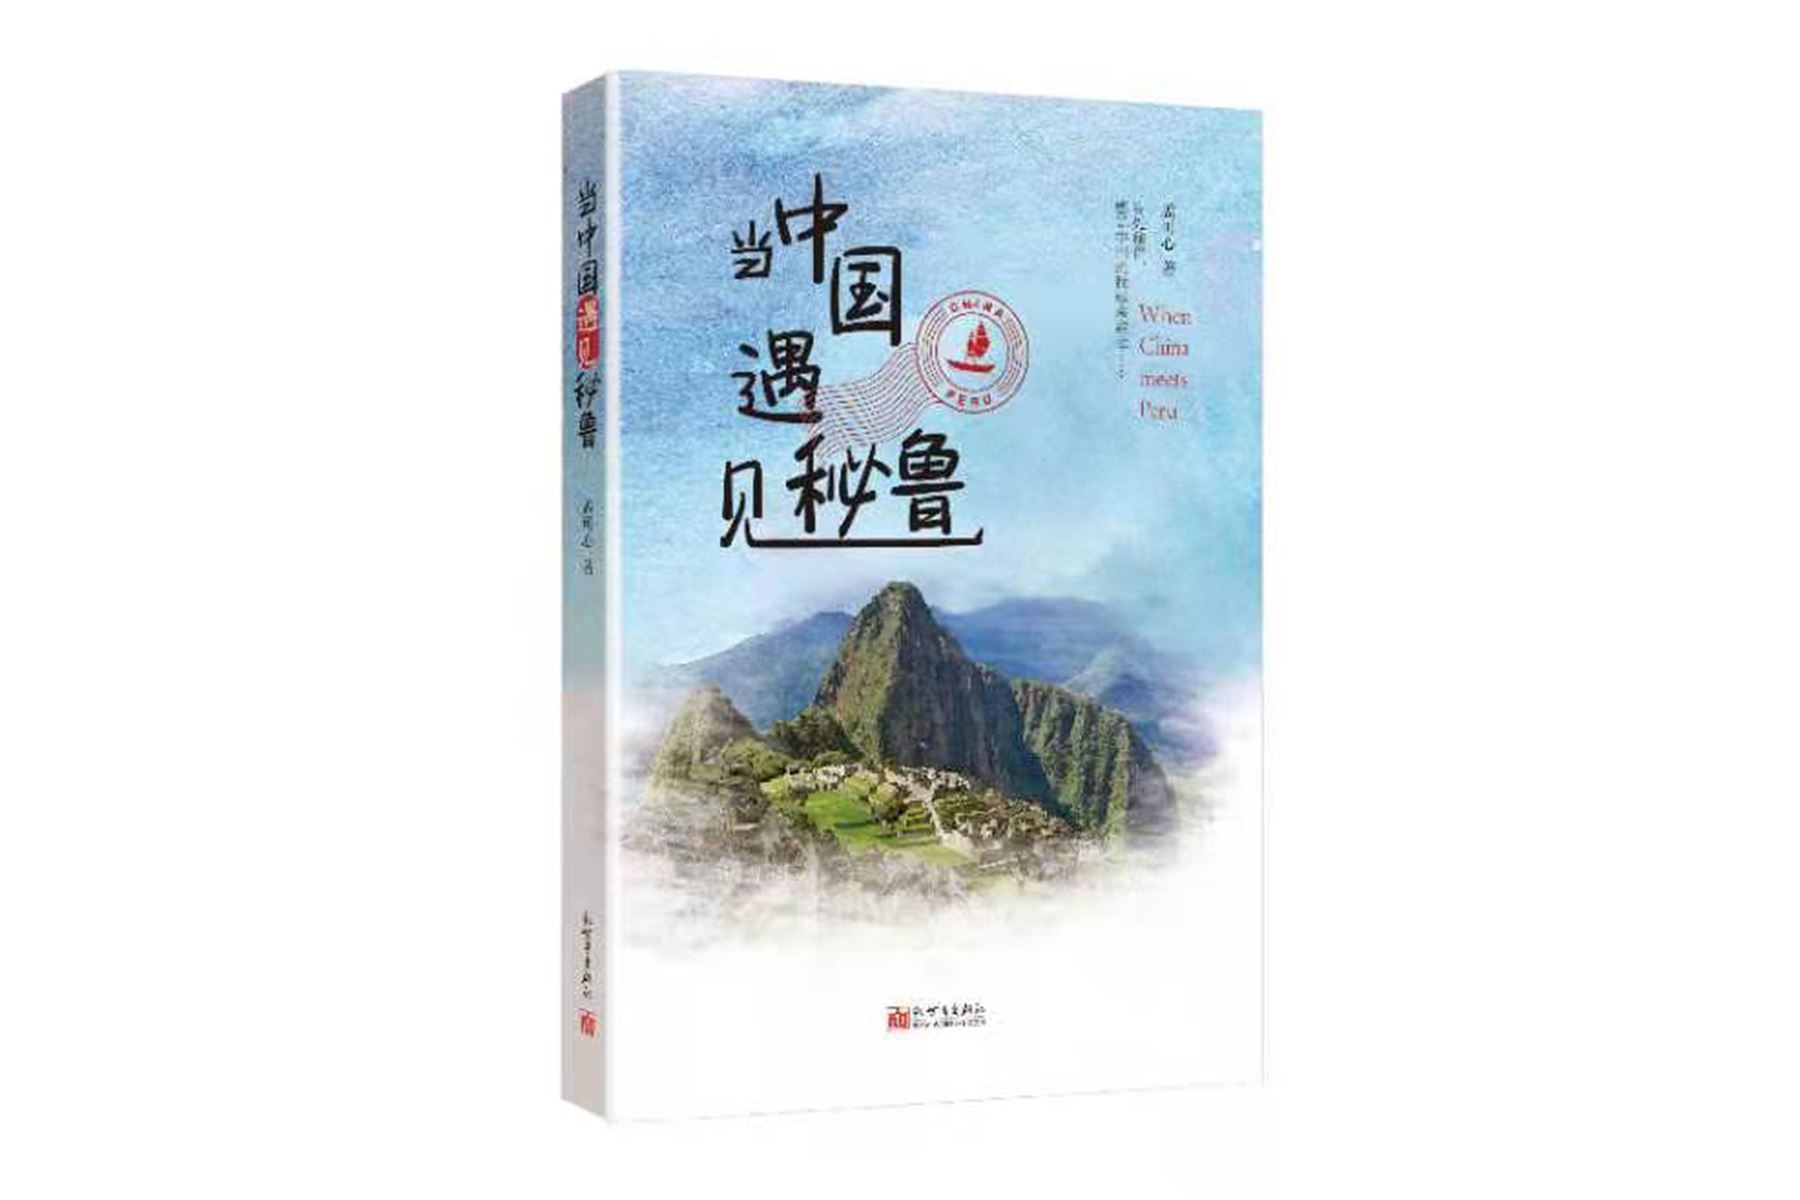 Presentan libro \"Cuando China se encuentra con Perú\" del escritor Kexin Meng